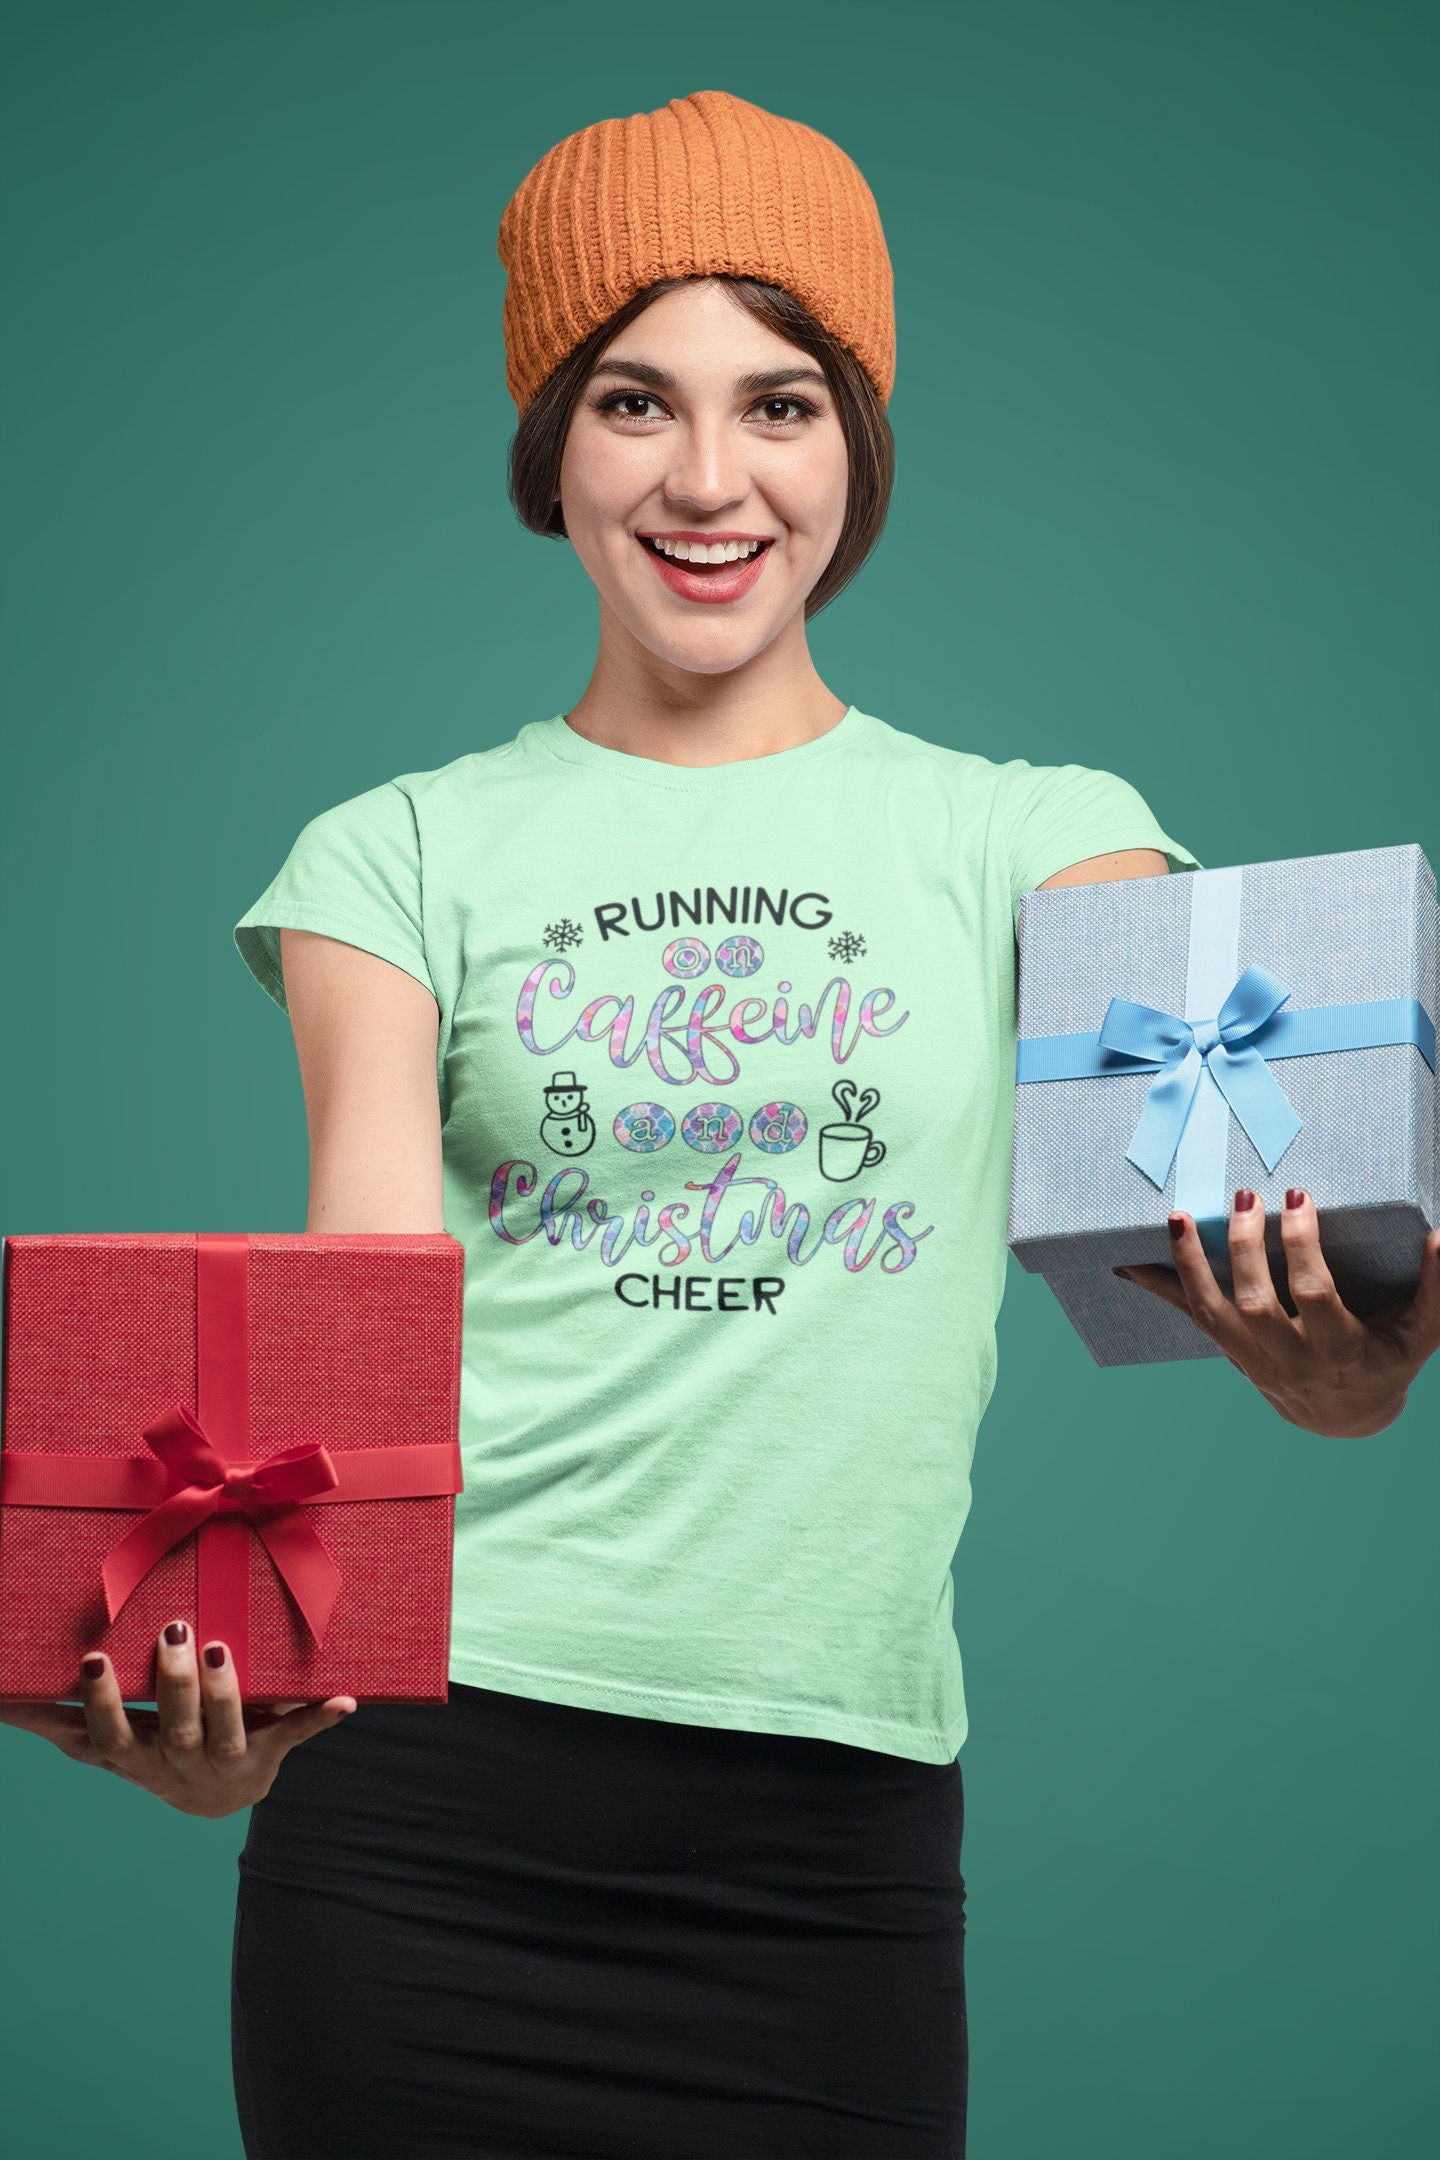 Running on Caffeine and Christmas Cheer Shirt